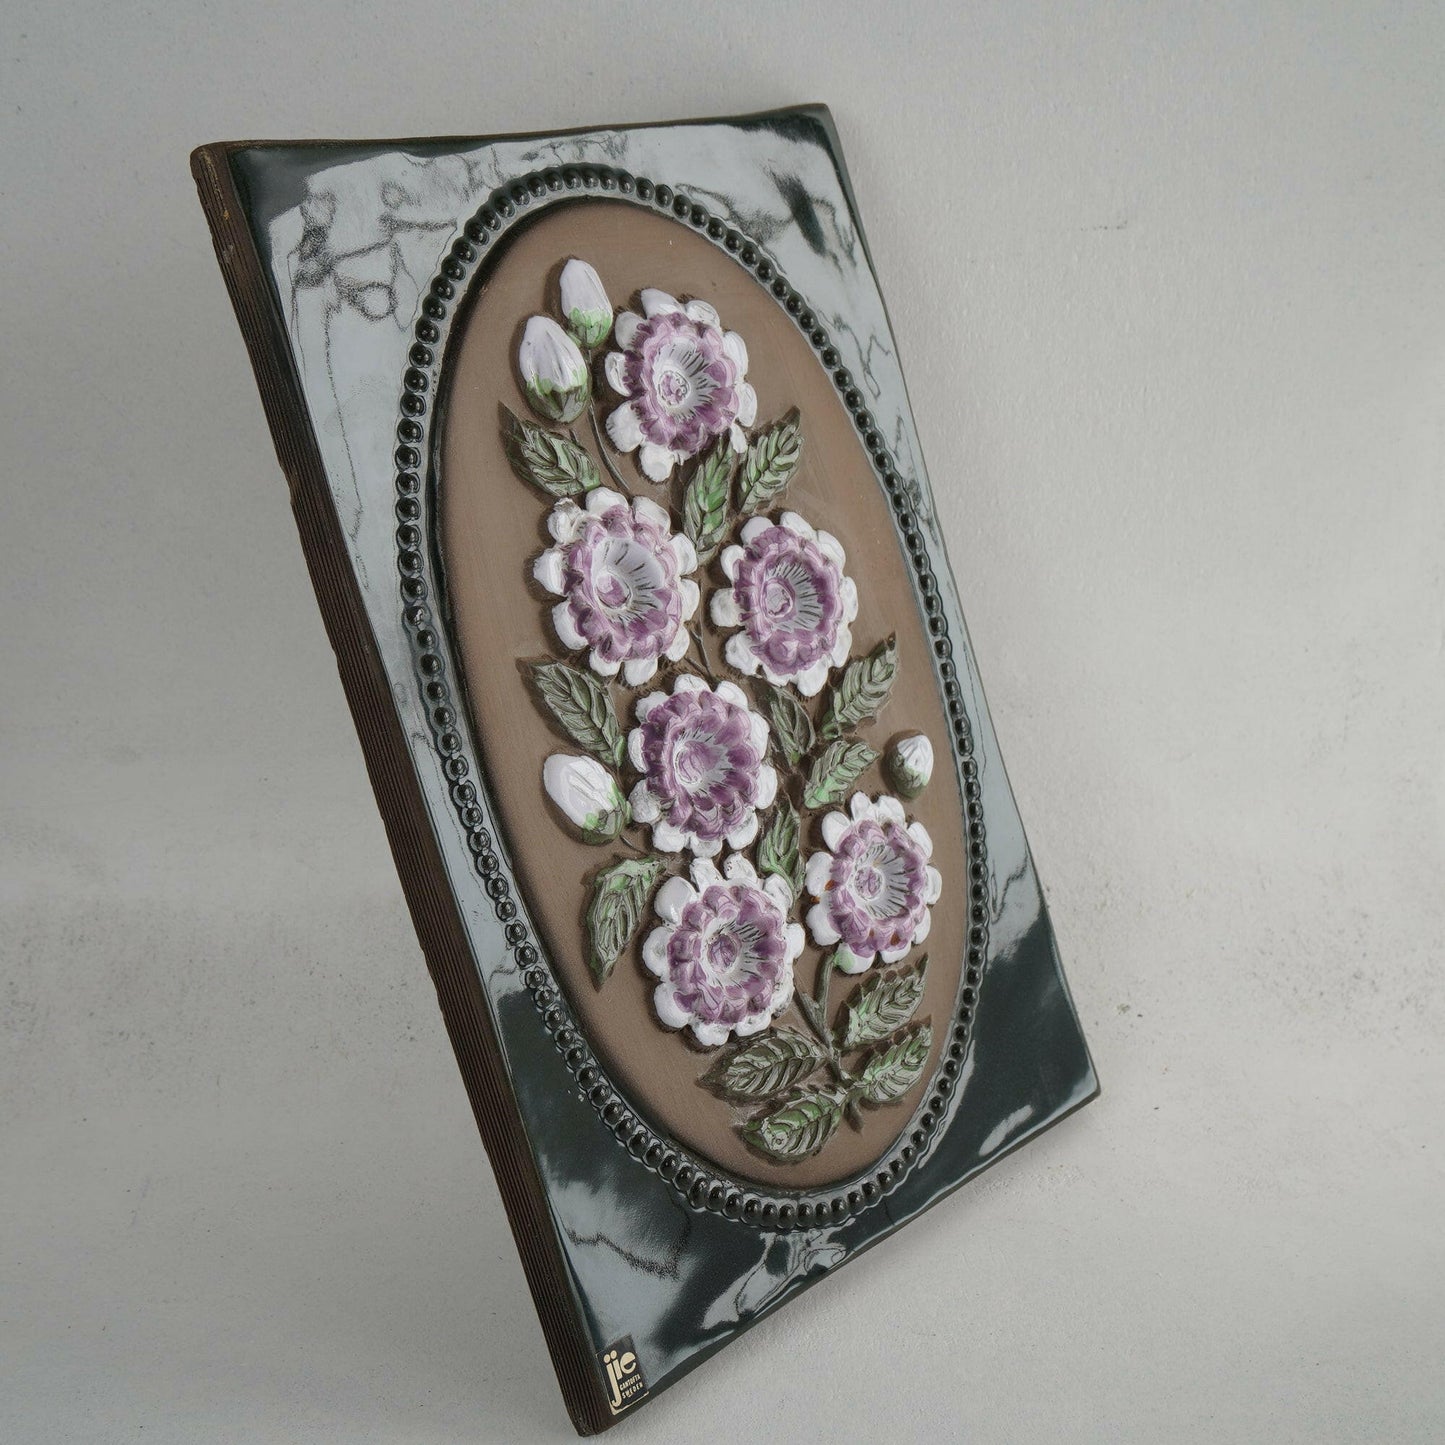 ジイ・ガントフタ 大サイズ陶板 No. 864「紫色の花」 陶板 Jie Gantofta   